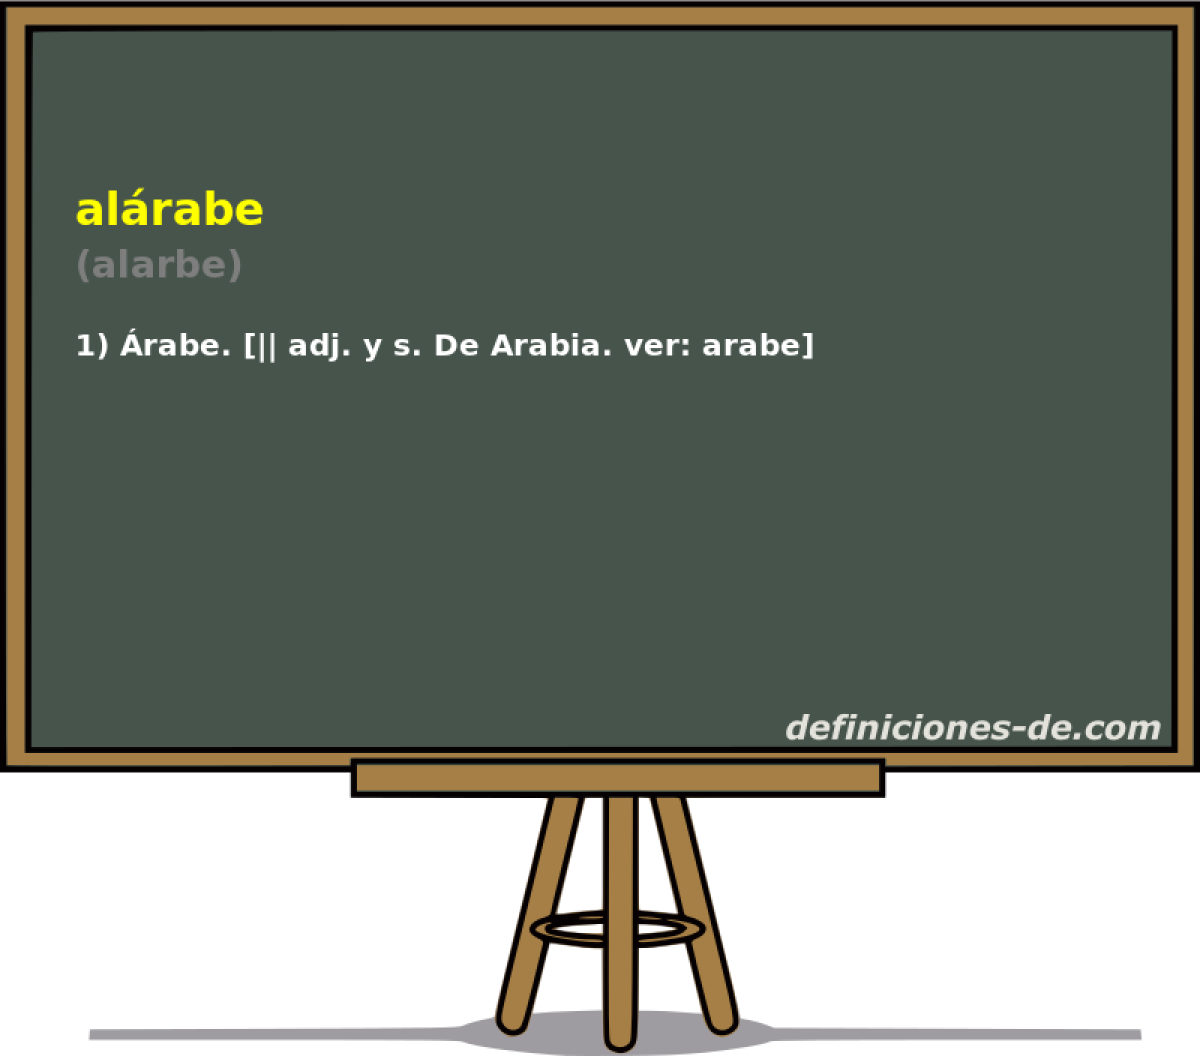 alrabe (alarbe)